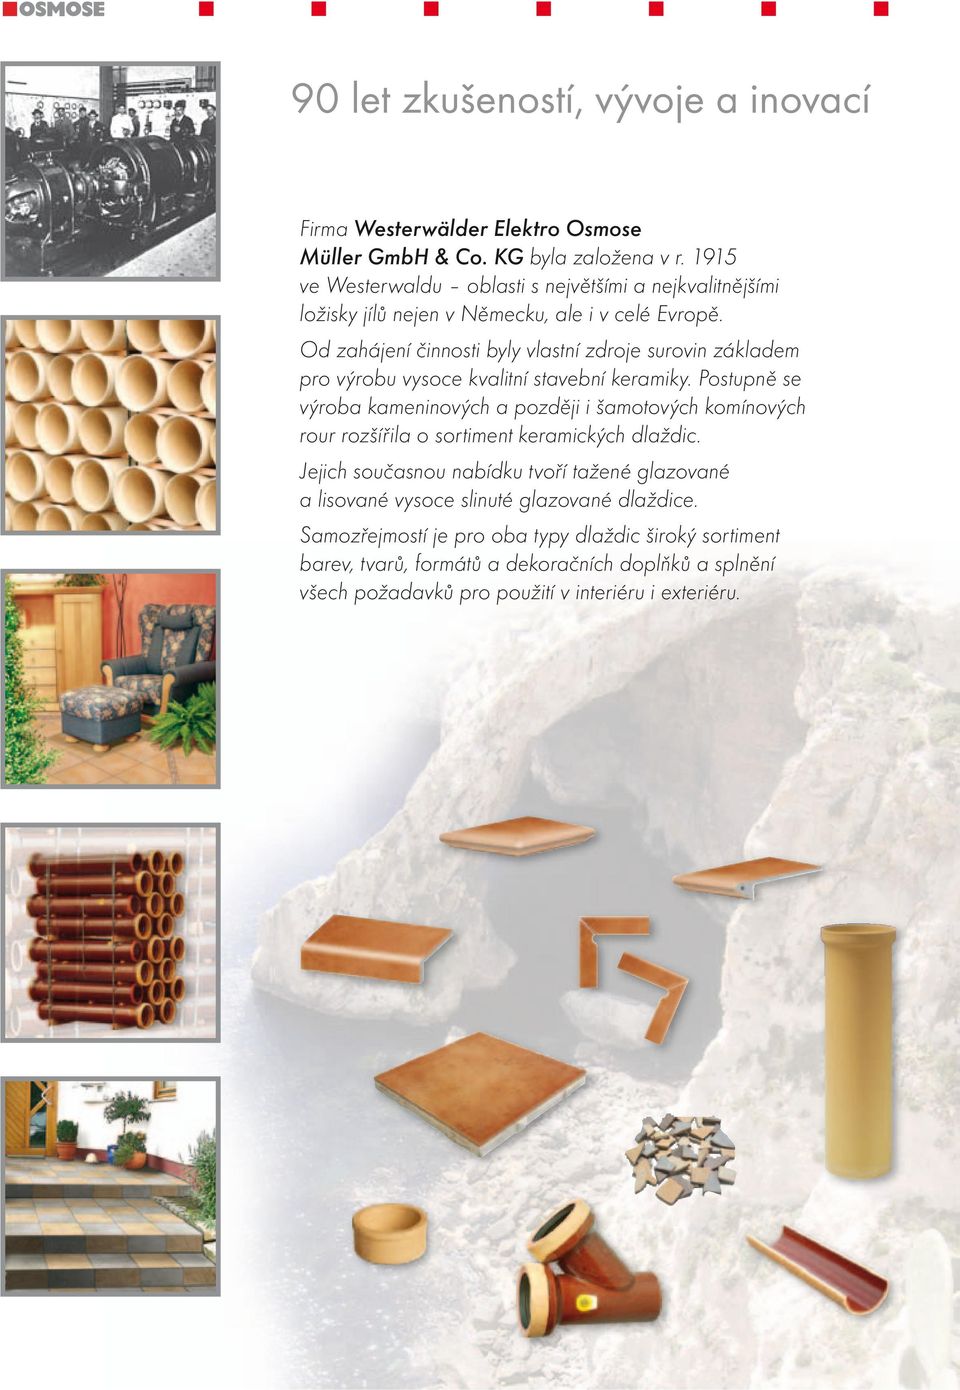 Od zahájení činnosti byly vlastní zdroje surovin základem pro výrobu vysoce kvalitní stavební keramiky.